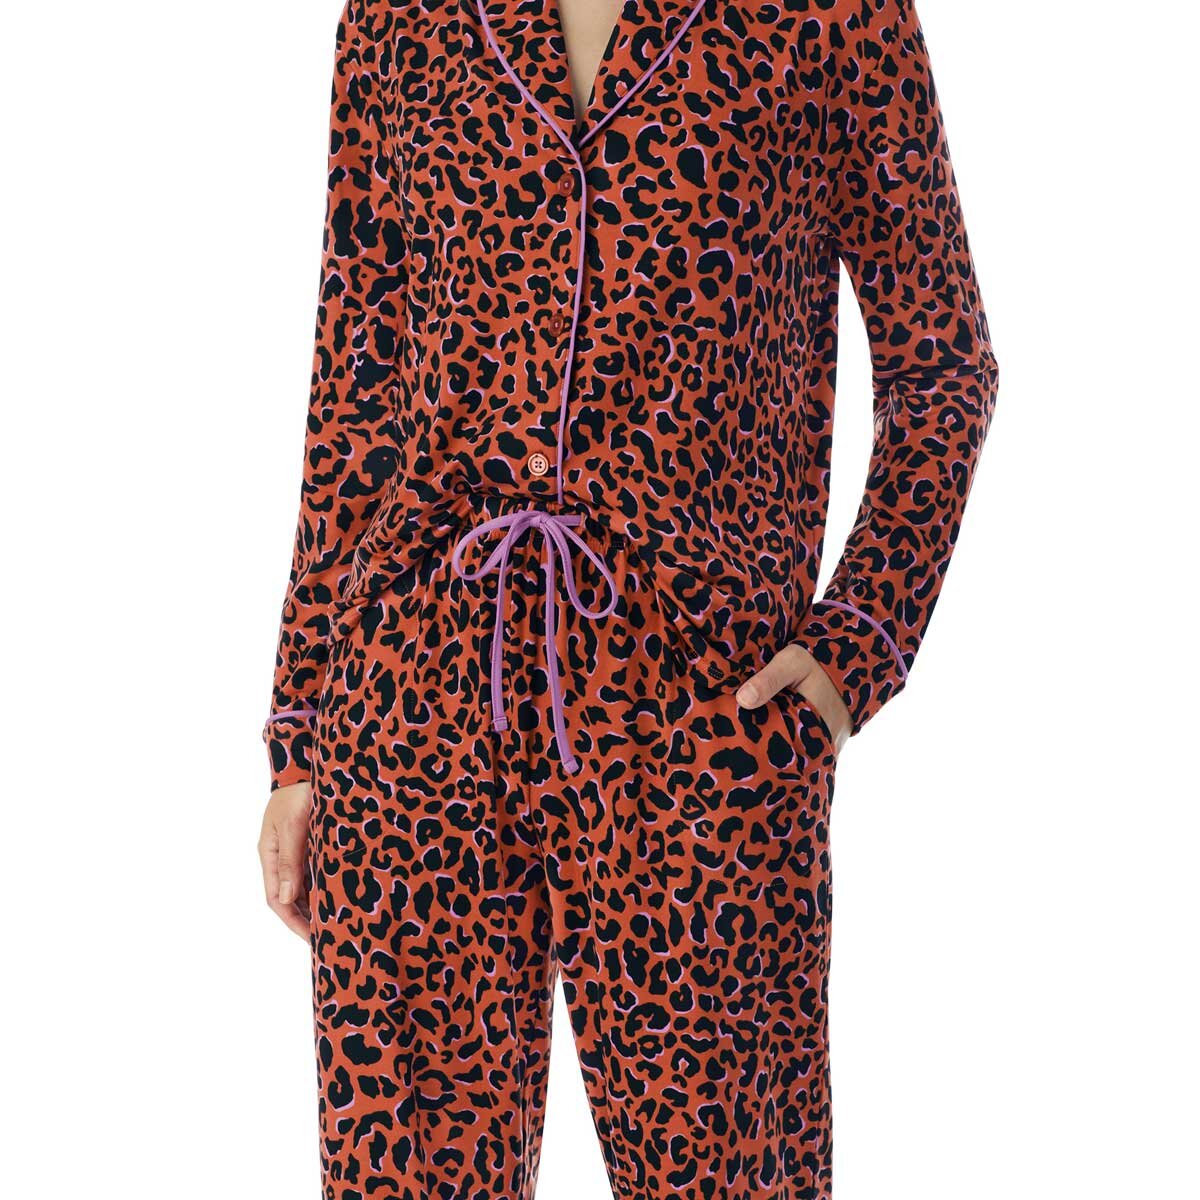 Jane & Bleeker Women's Silky Plush 2 Piece Pyjama Set in